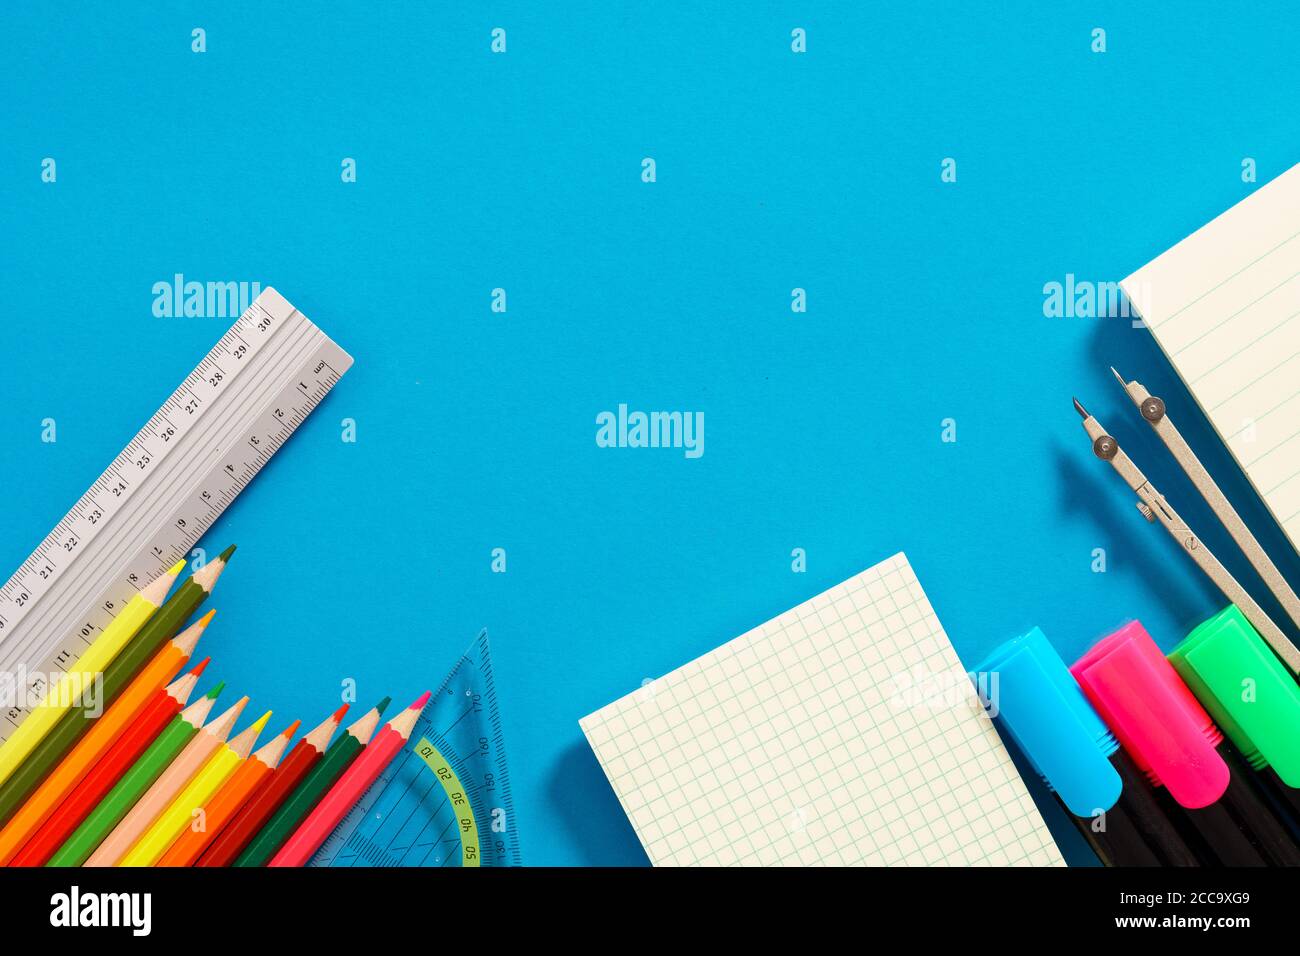 Schulbedarf, Bleistifte, Marker und Lineale Stockfoto